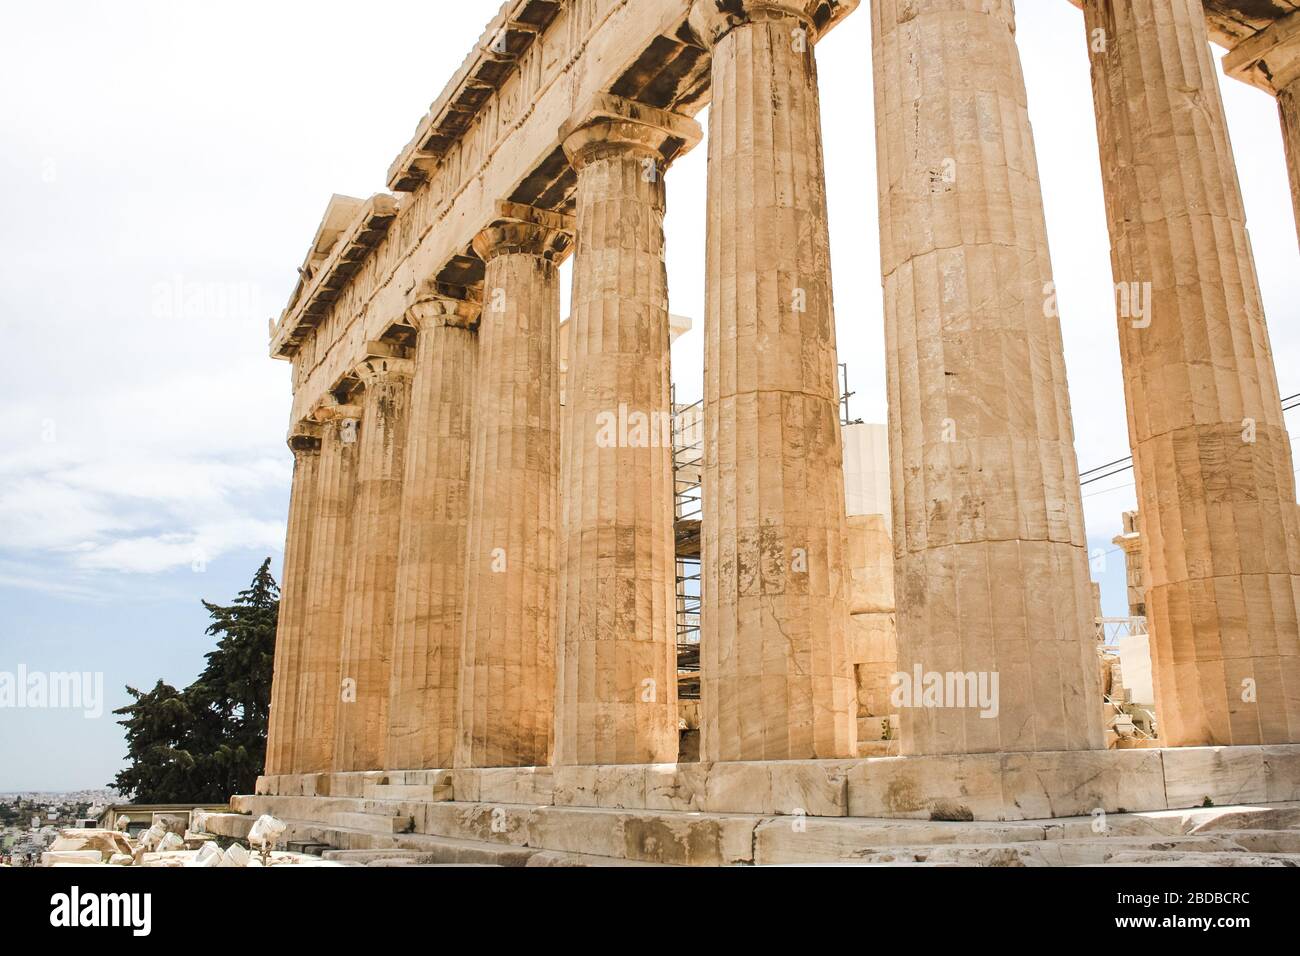 The Parthenon temple on the Athenian Acropolis, Greece Stock Photo